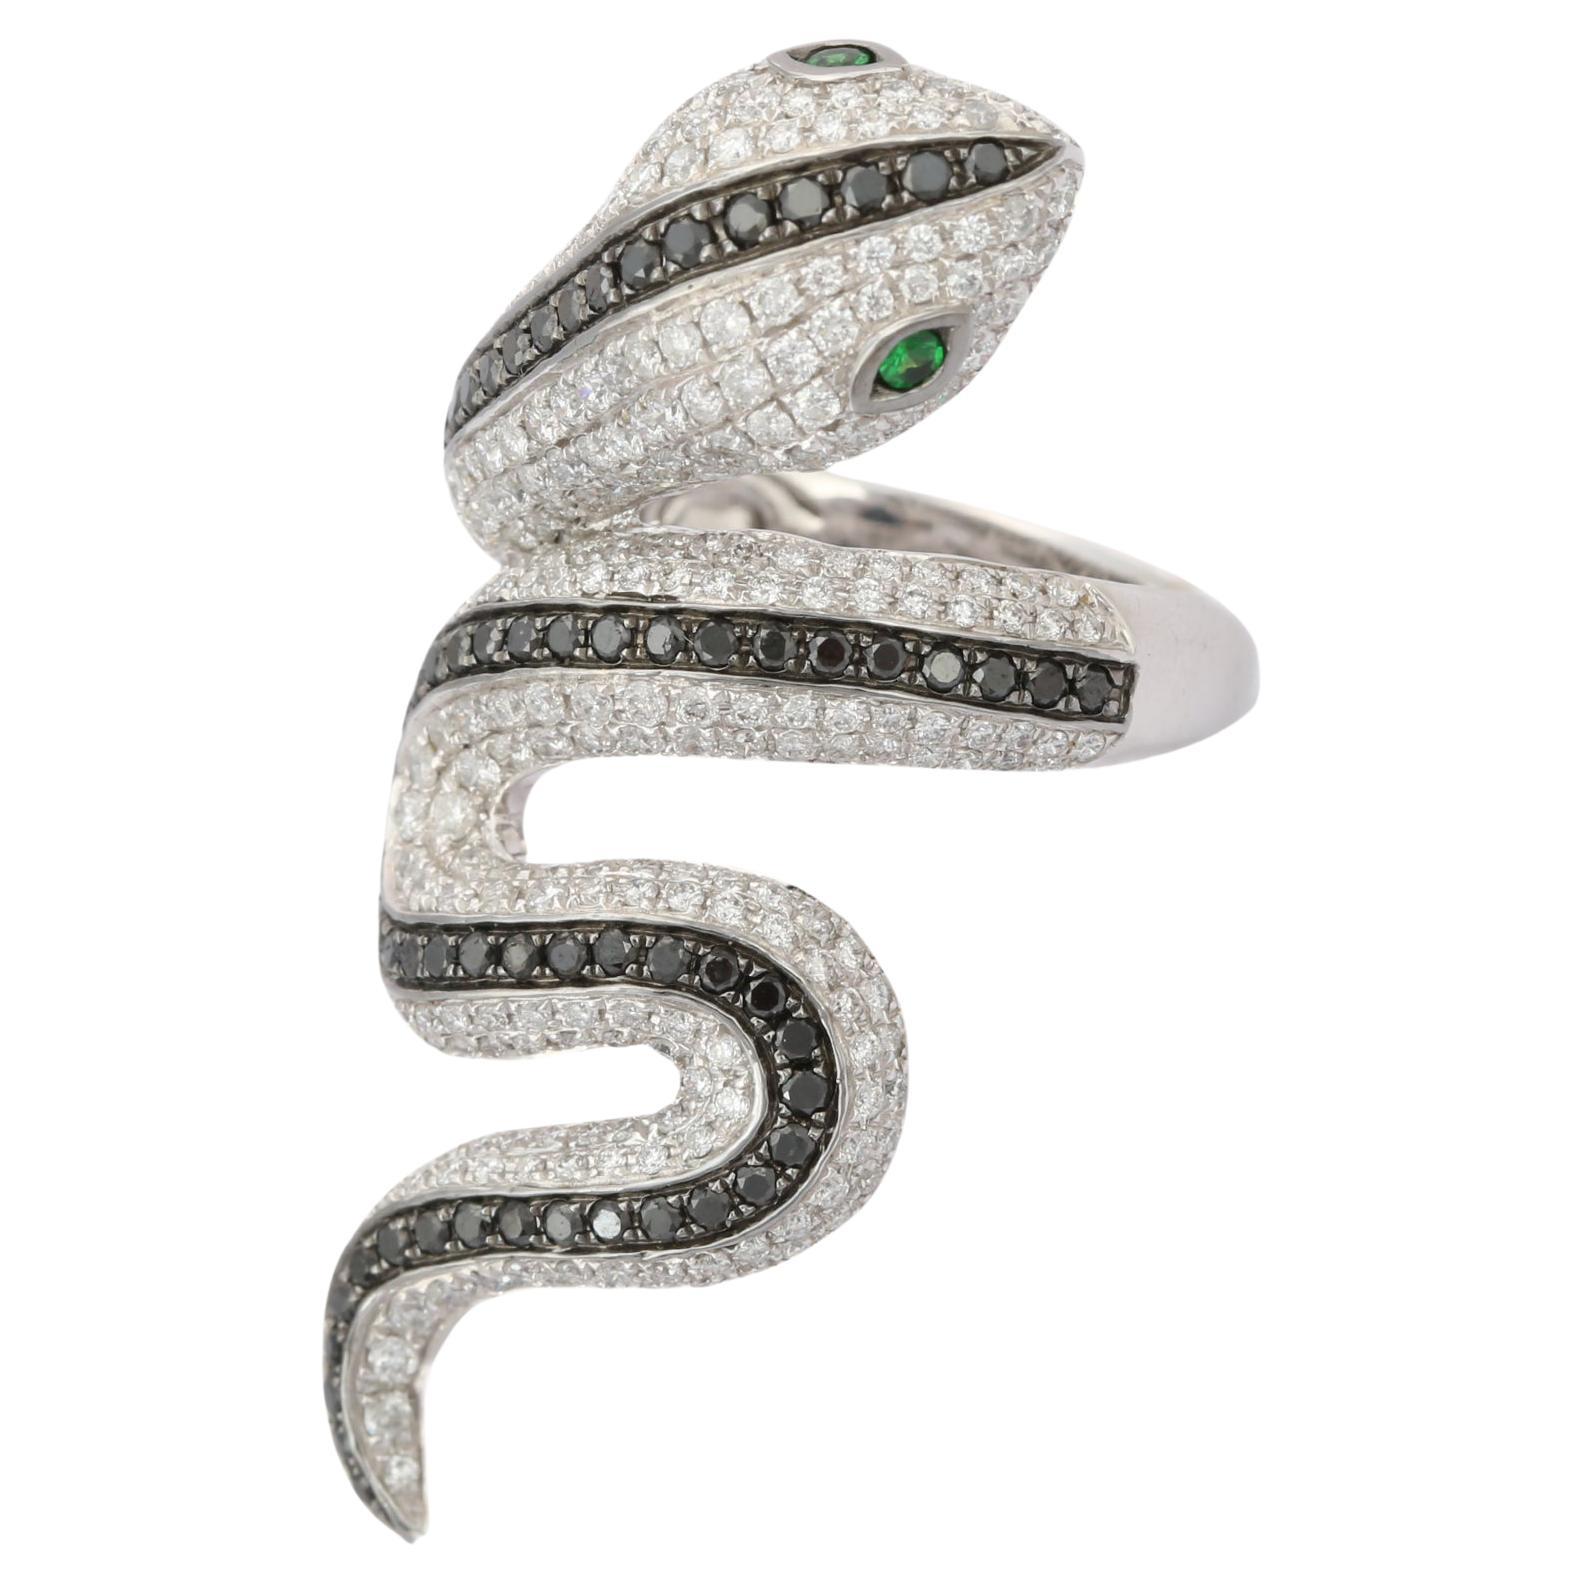 Tsavorite Eye and Diamond Snake Coil Ring in 18k Solid White Gold